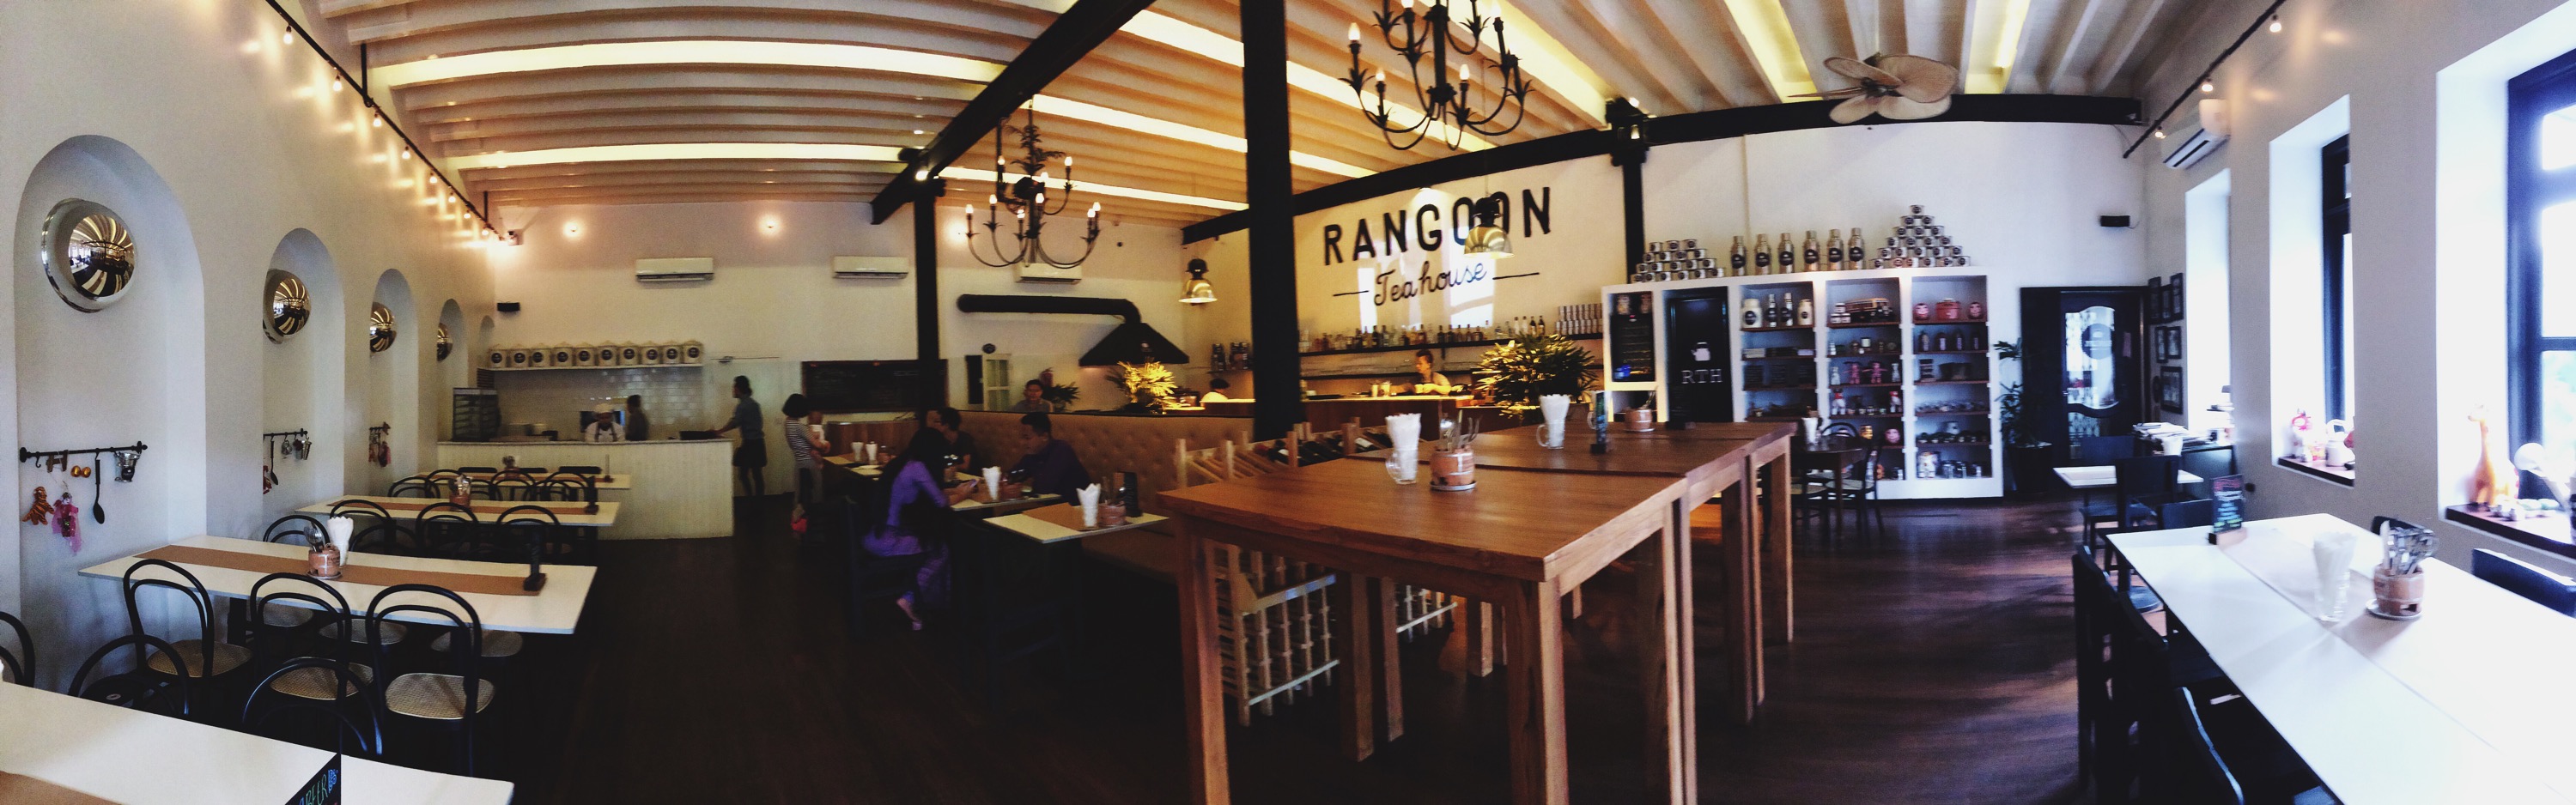 Rangoon Teahouse